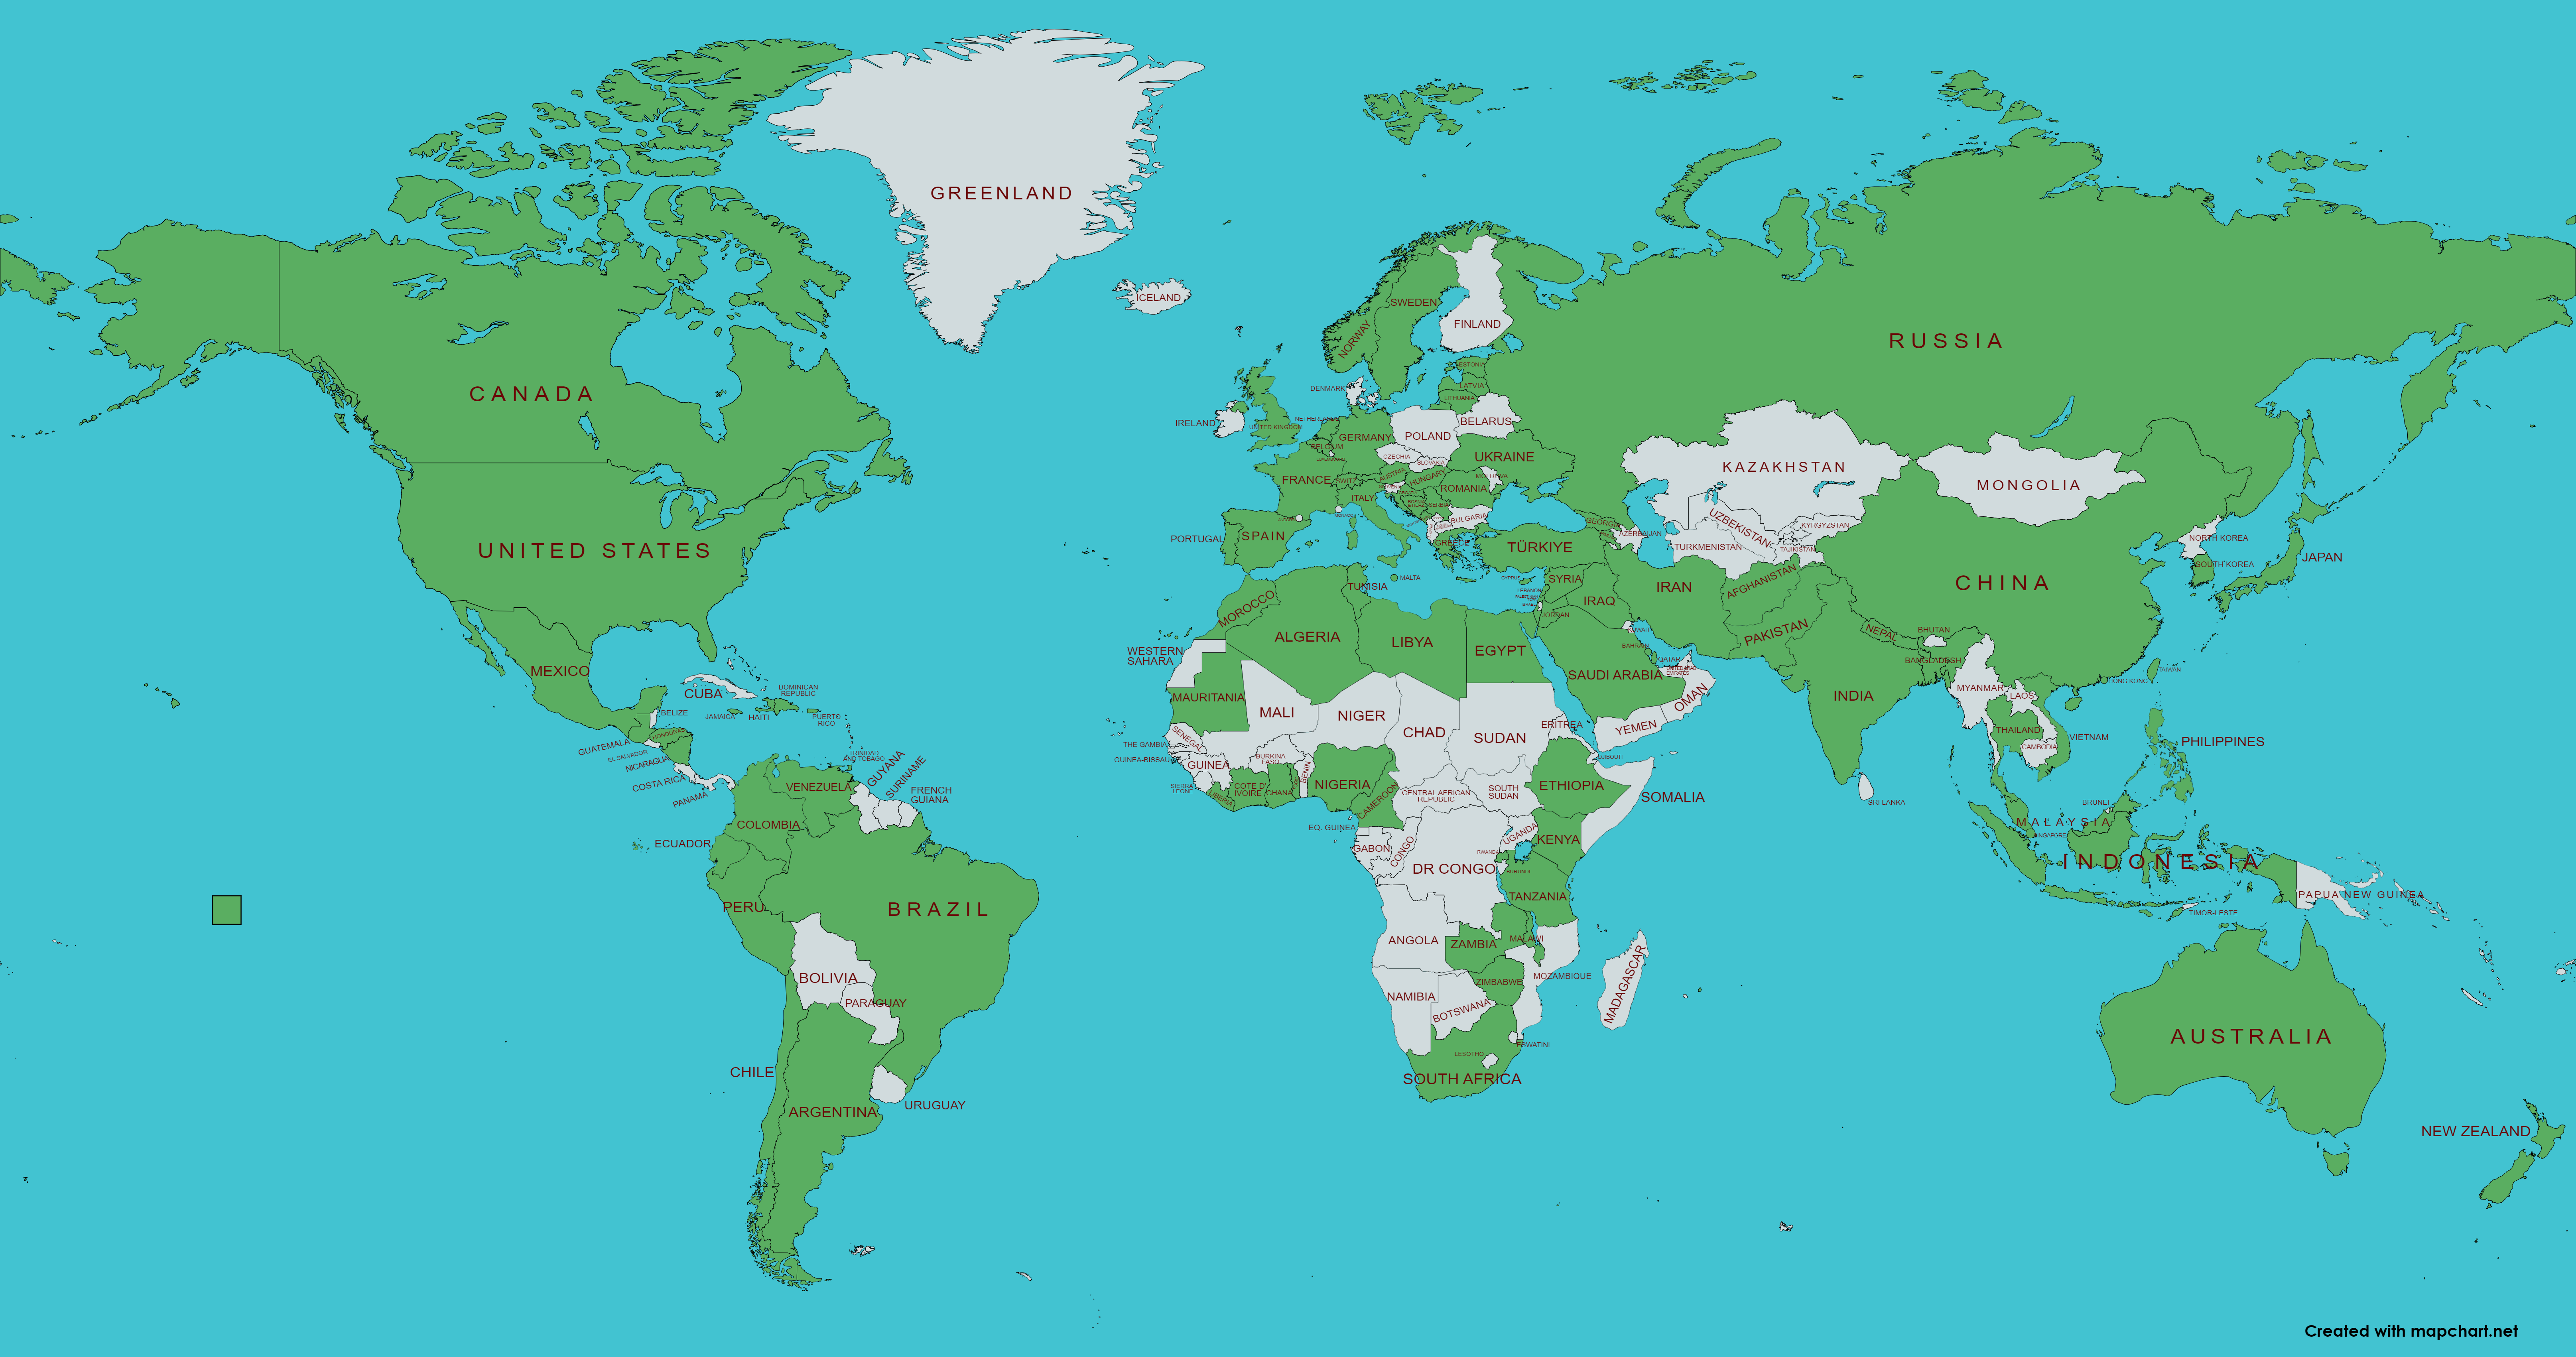 Die Abbildung zeigt eine Weltkarte, auf der ein Großteil der Staaten auf allen Kontinenten grün markiert ist.